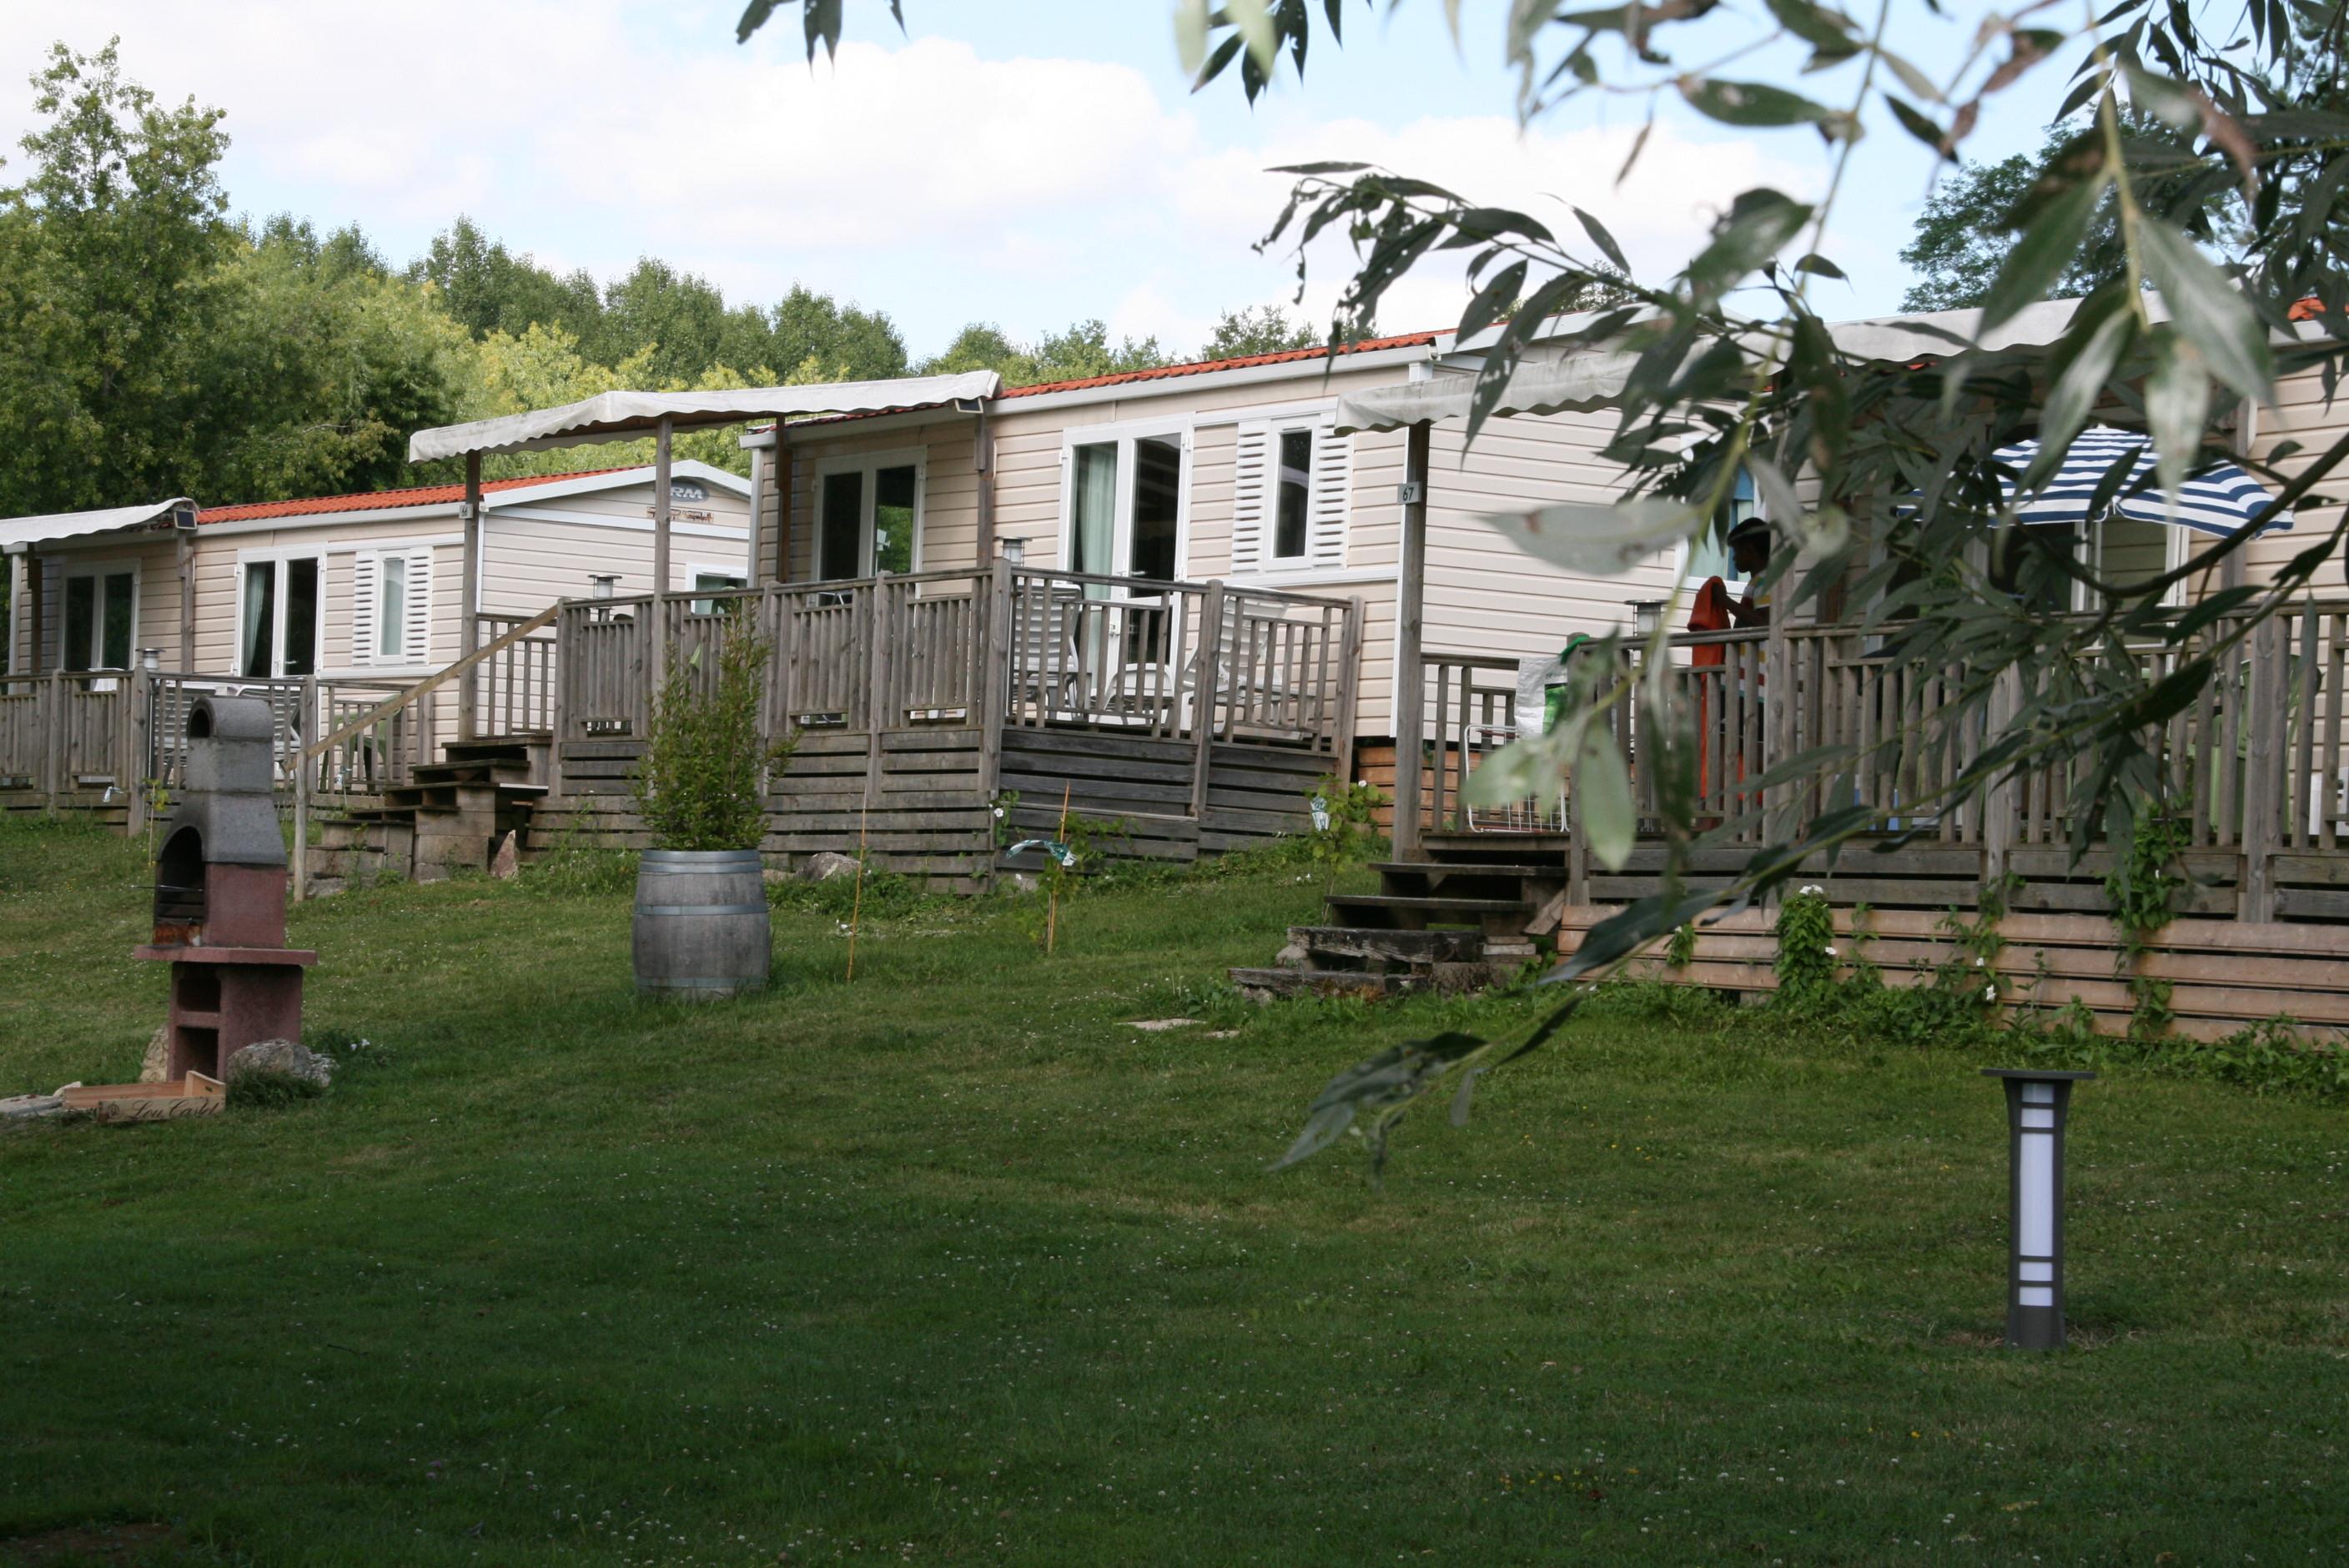 Location - Mobilhome Luxe - 2 Chambres - Vue Sur Le Lac - 47M² Terrasse Comprise - Camping Domaine du Lac de Neguenou